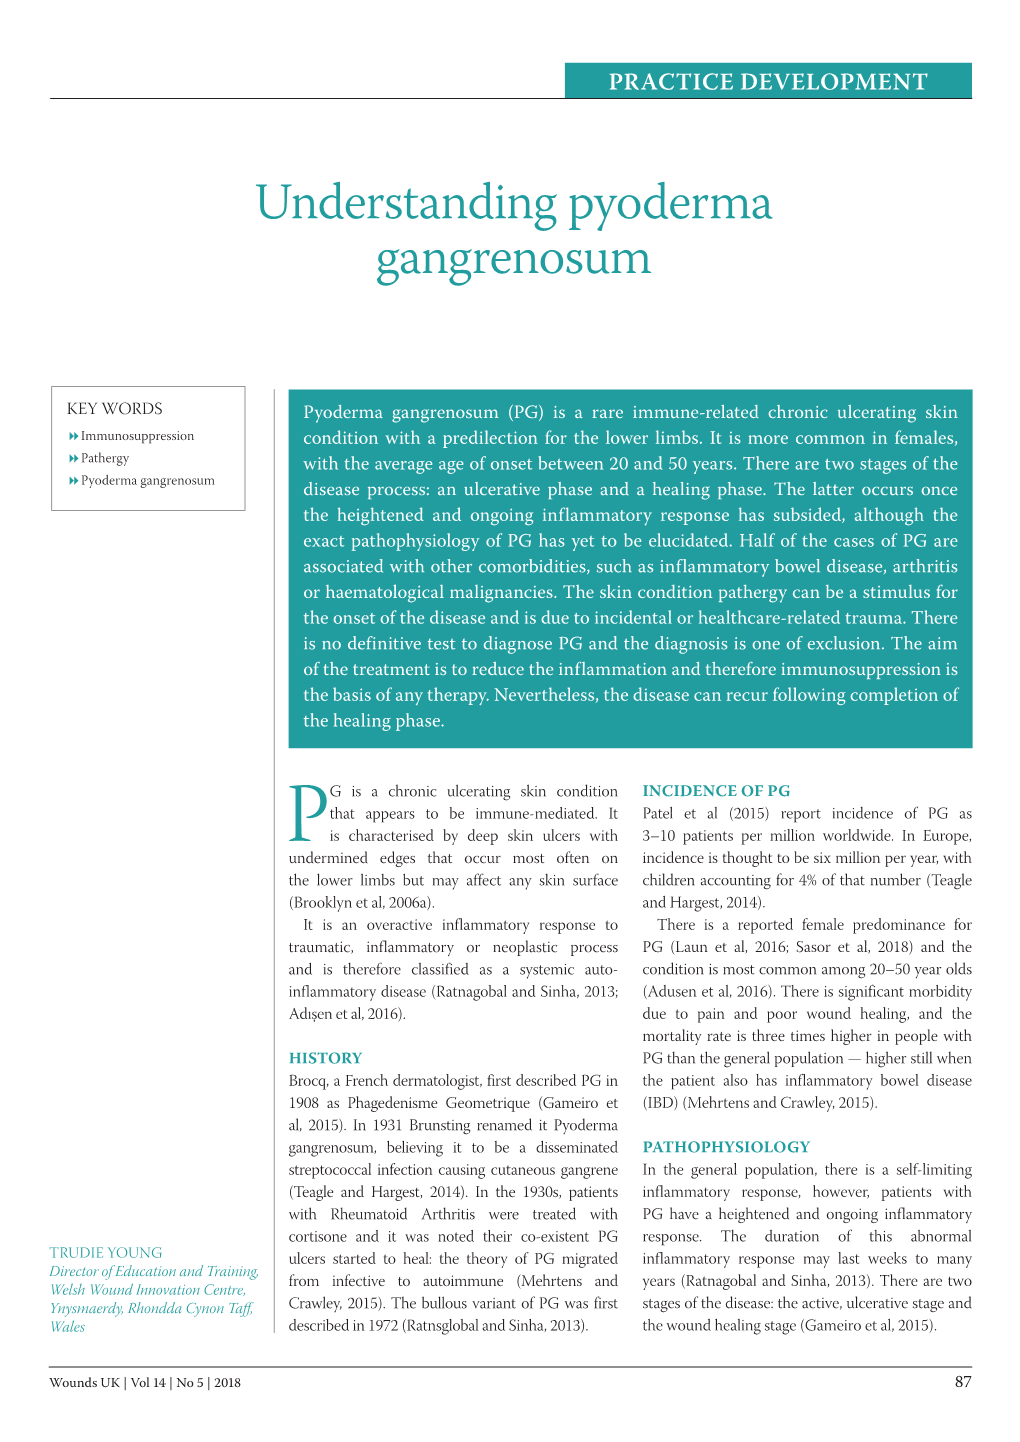 Understanding Pyoderma Gangrenosum